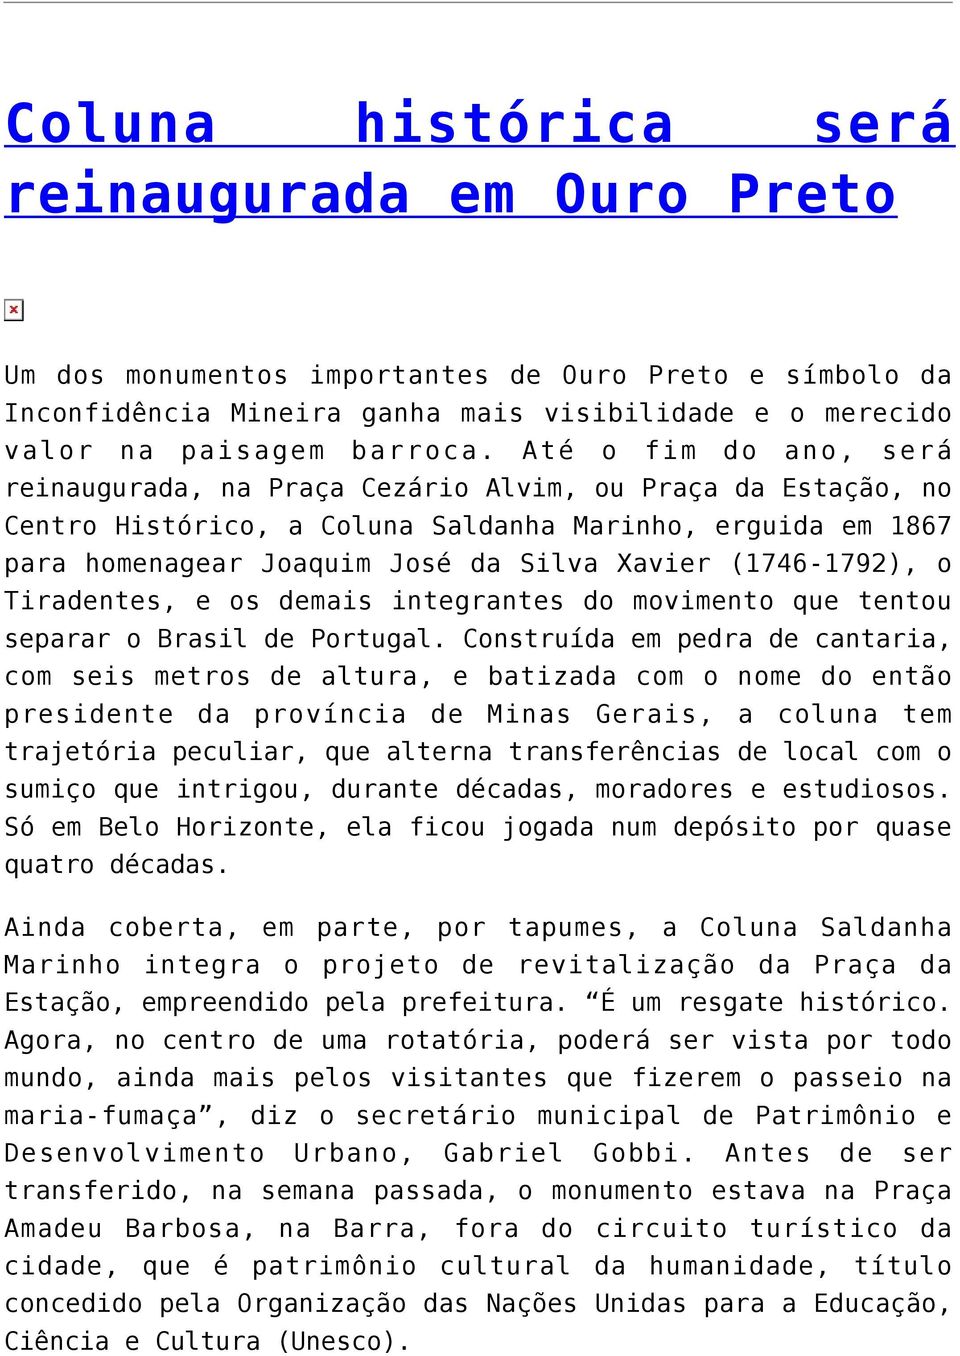 (1746-1792), o Tiradentes, e os demais integrantes do movimento que tentou separar o Brasil de Portugal.